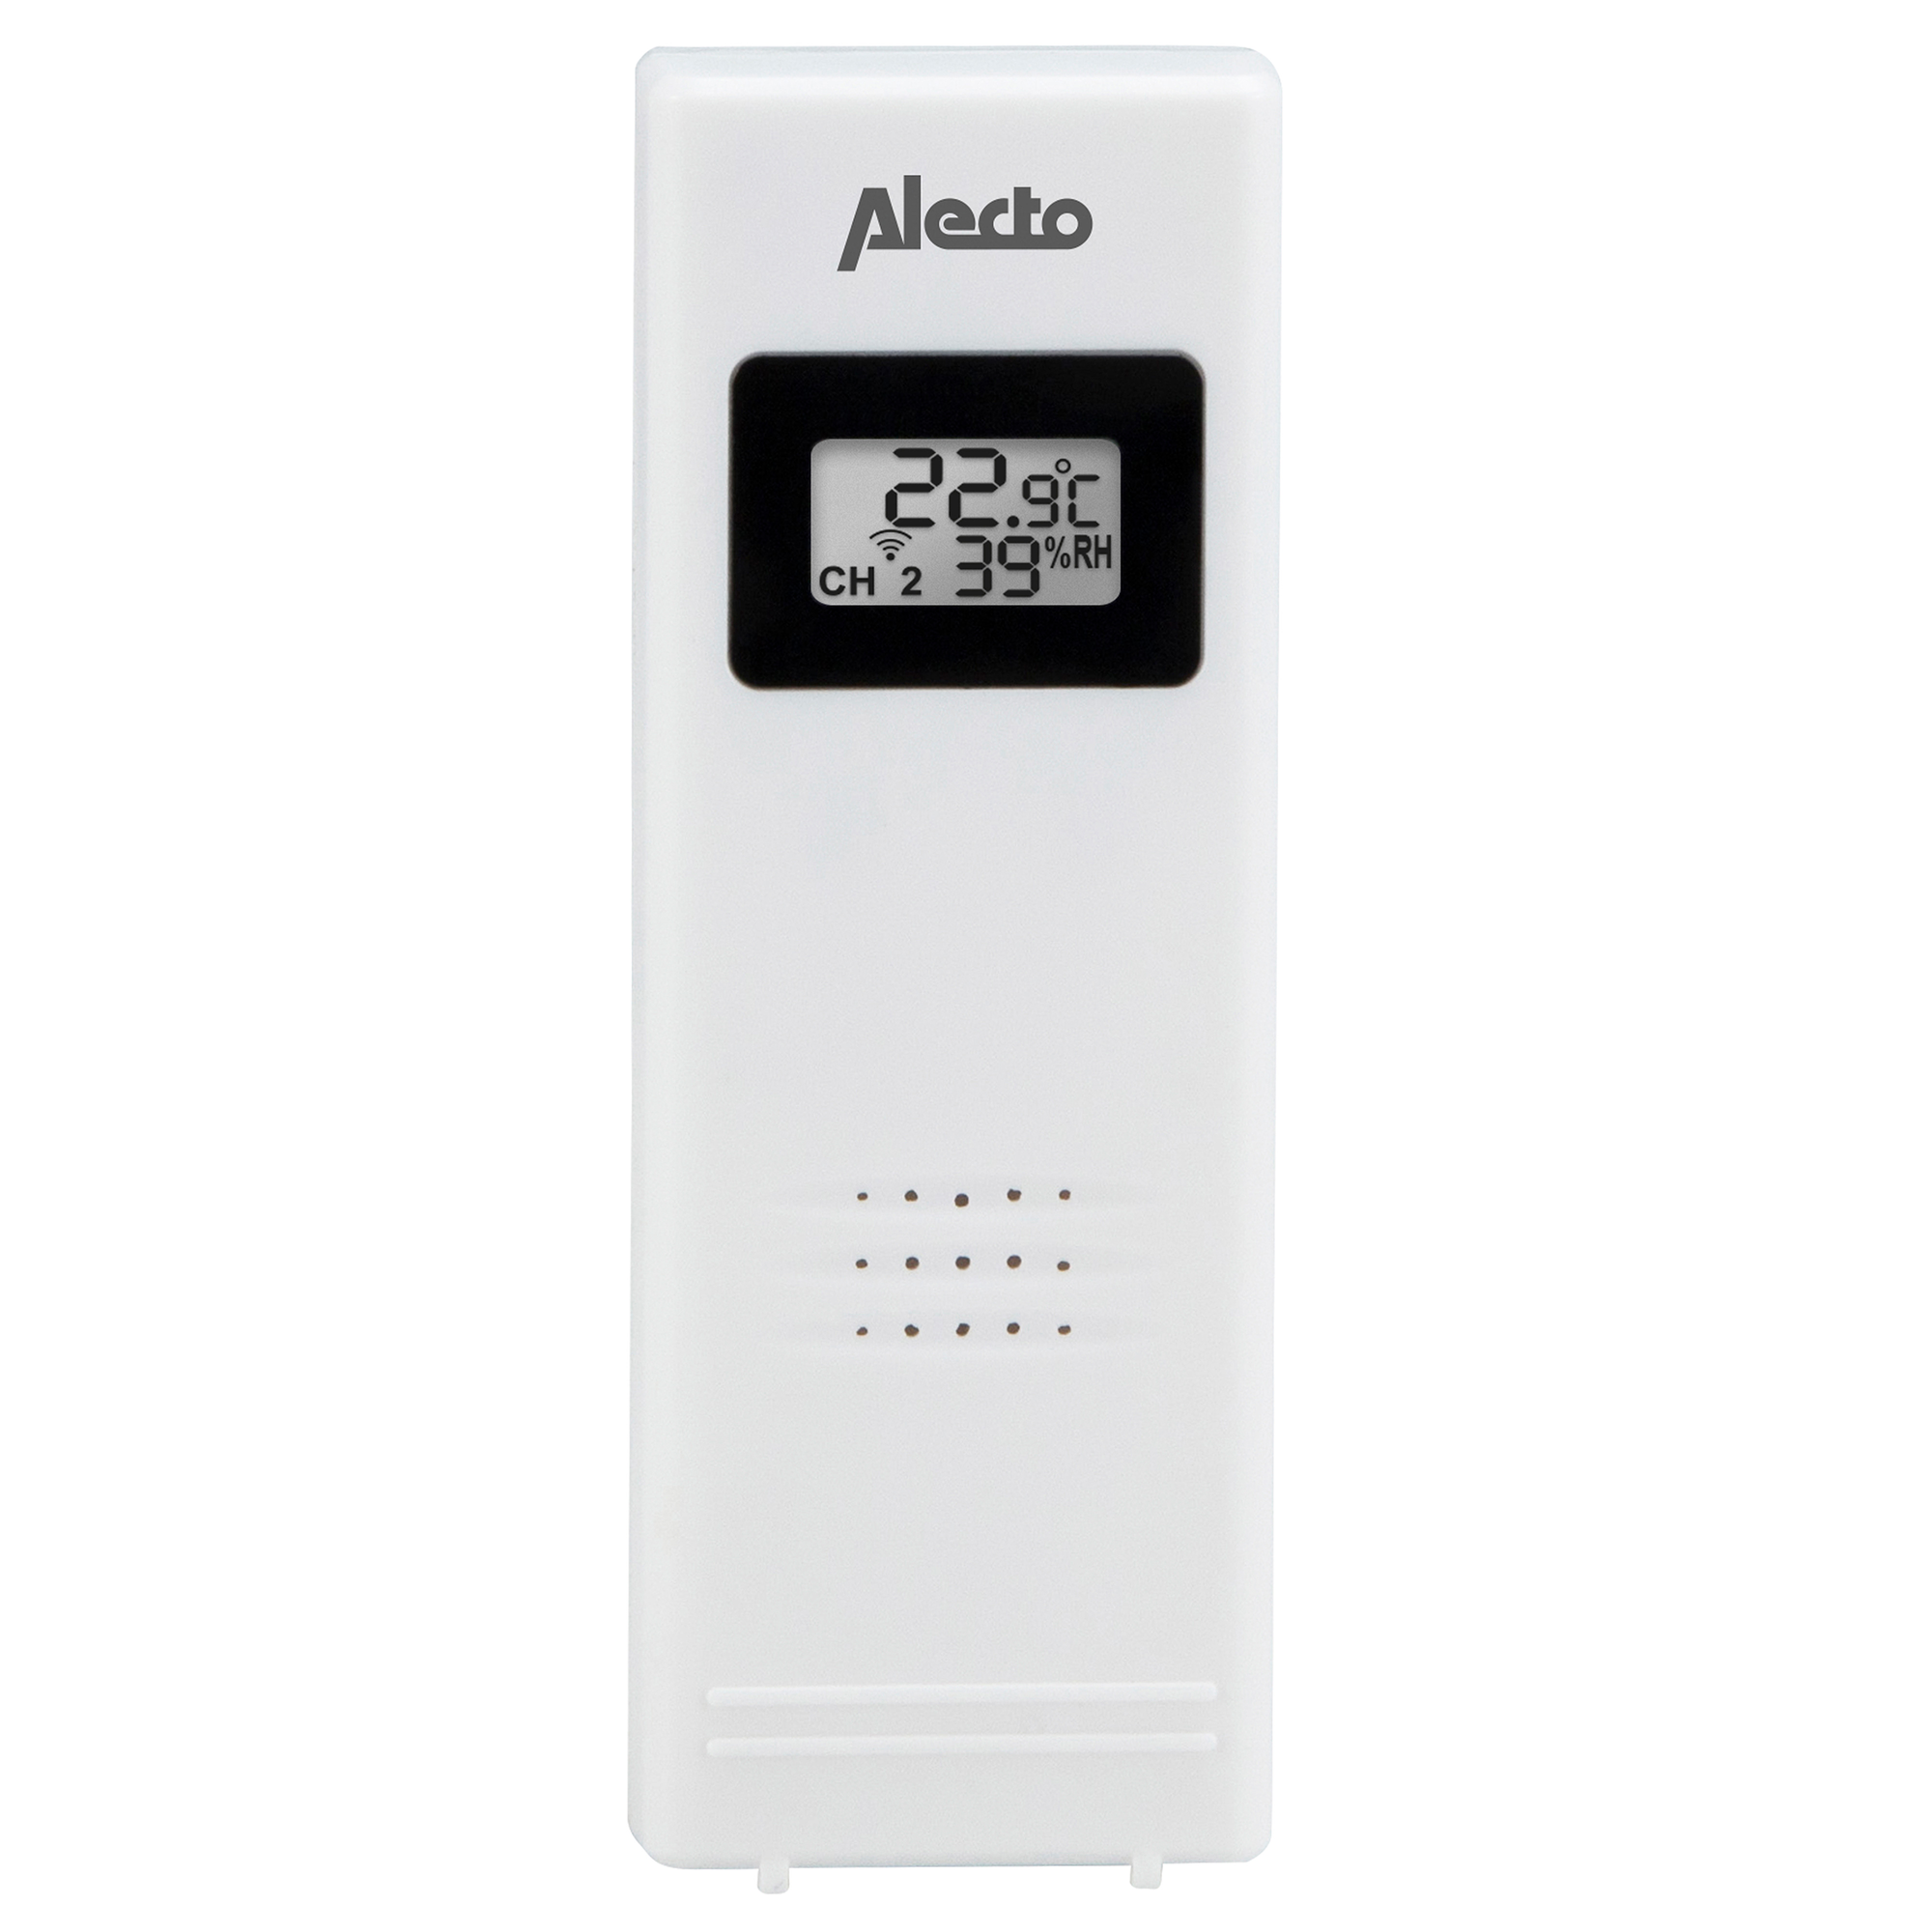 ALECTO WS-1330 messen 4 - an Orten - Luftfeuchtigkeit Temperatur und Wetterstation